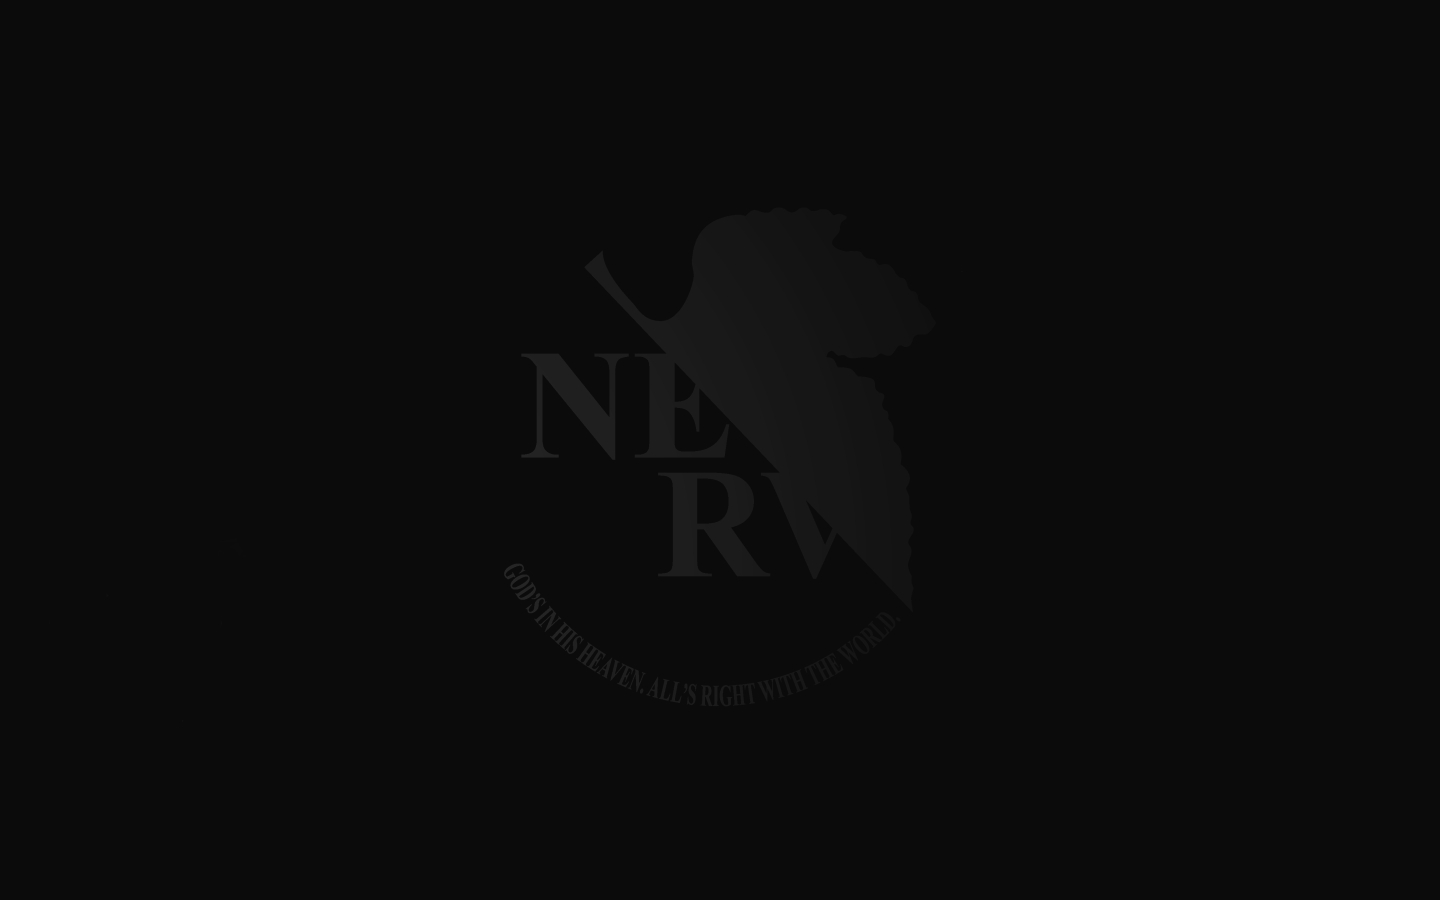 nerv_logo_by_tweaka.jpg